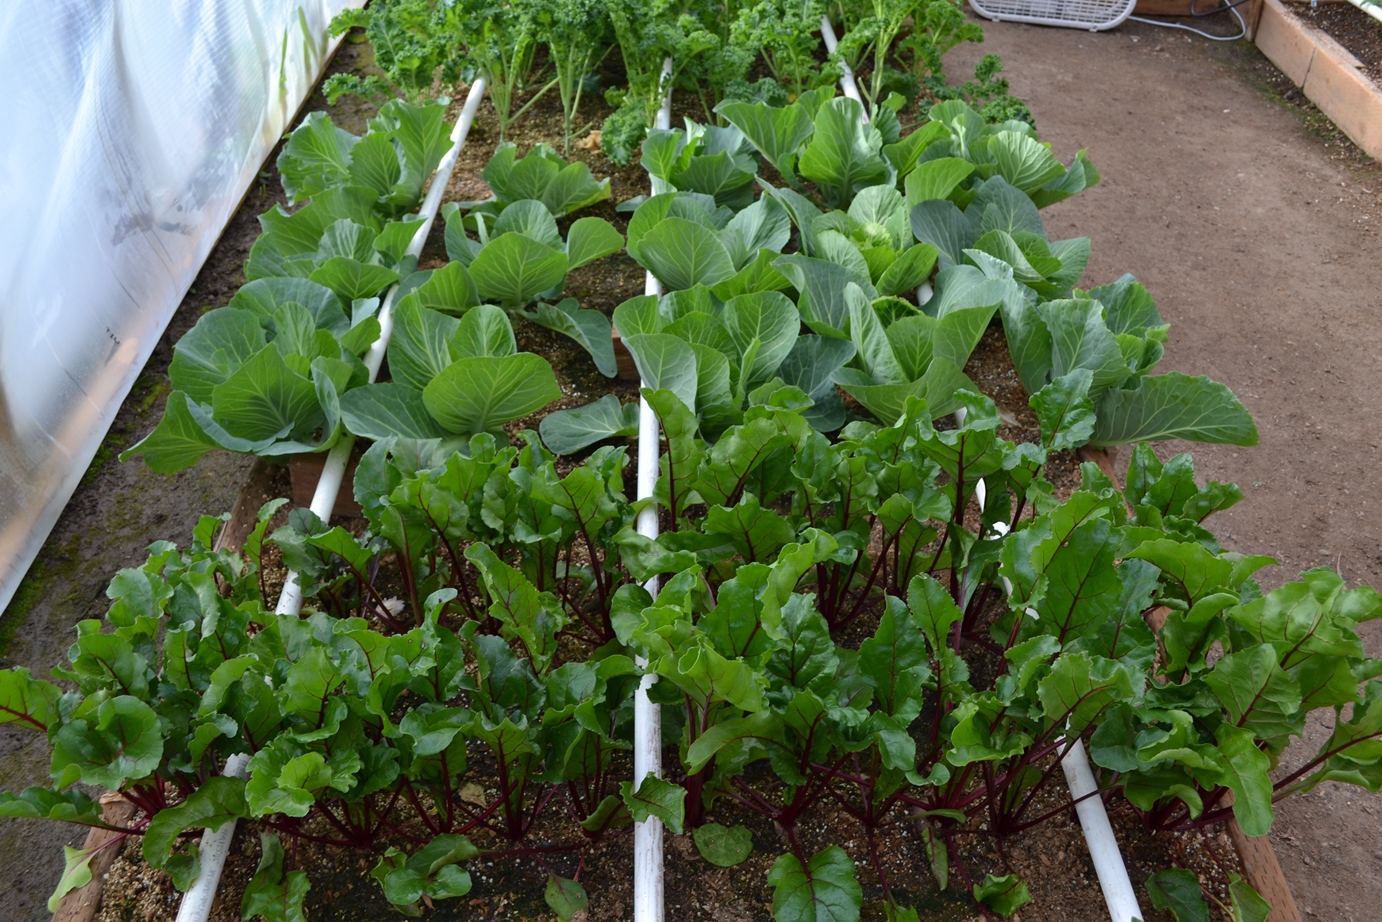 Beets Cabbage & Kale mittleider garden